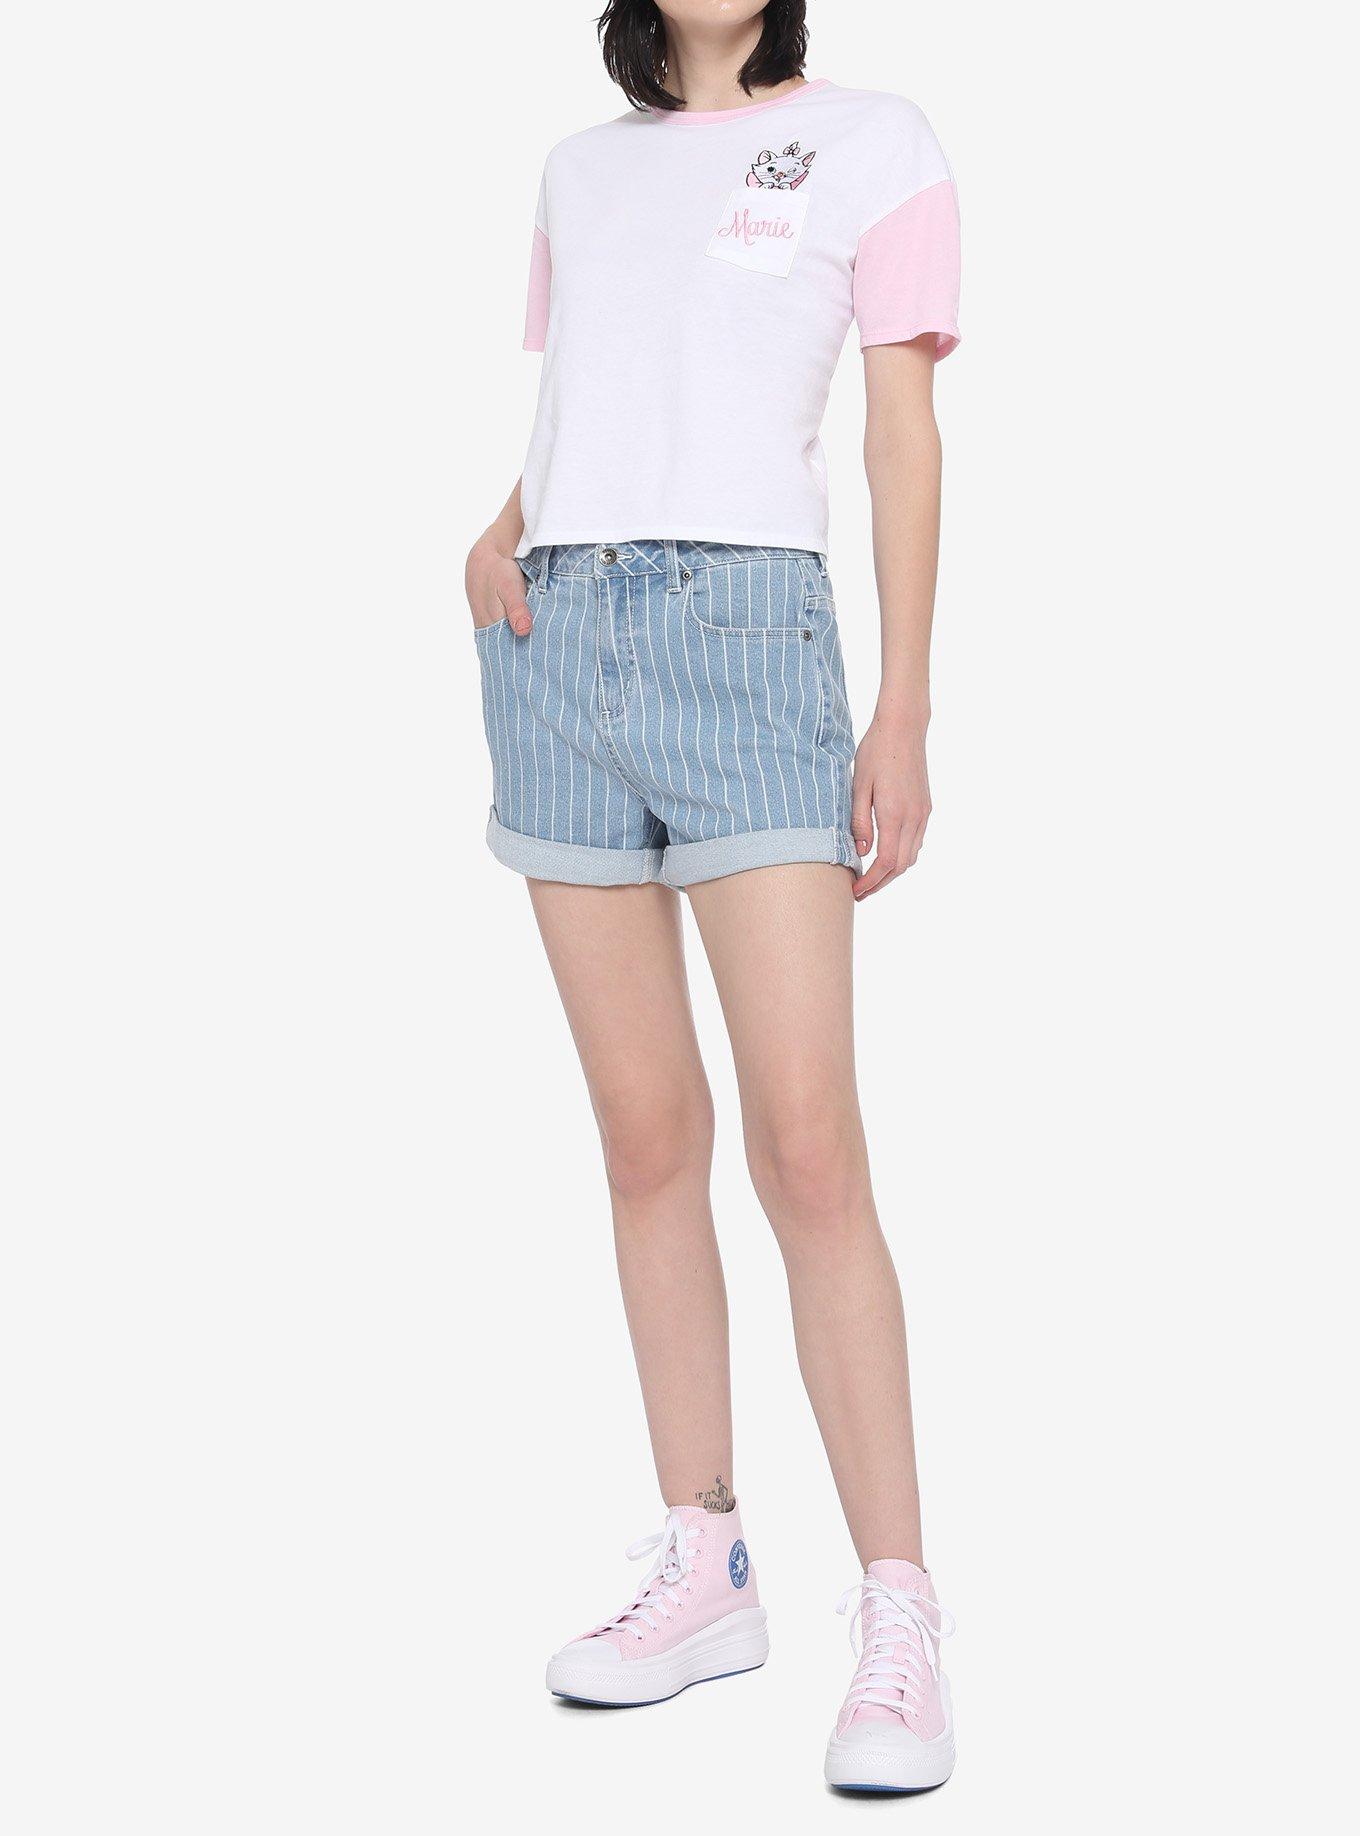 Disney The Aristocats Marie Pocket Girls Crop T-Shirt, PINK, alternate